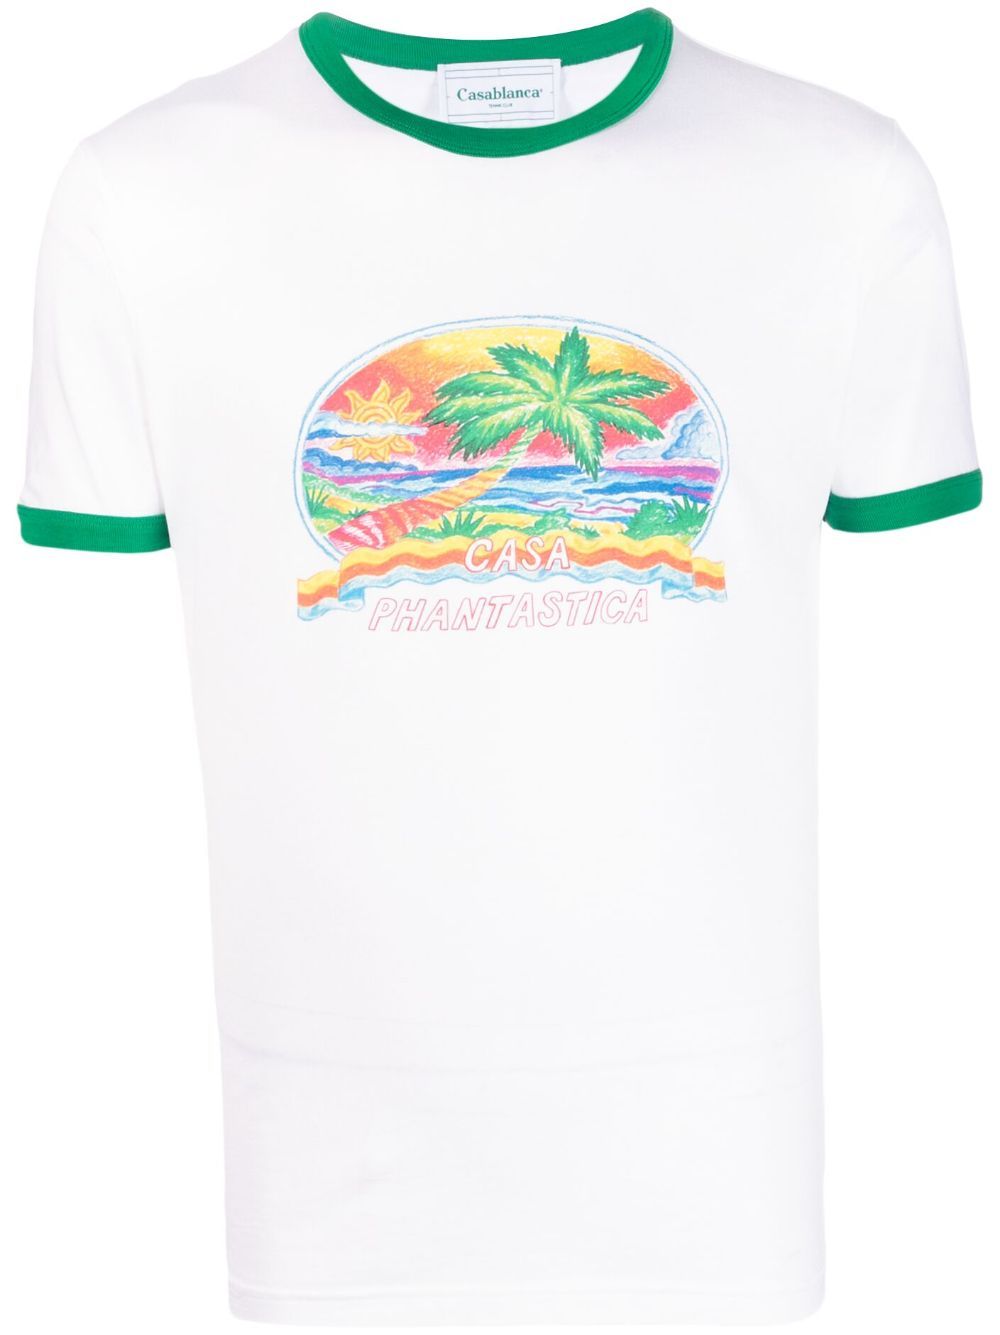 카사블랑카 남성 카사 판타스티카 티셔츠